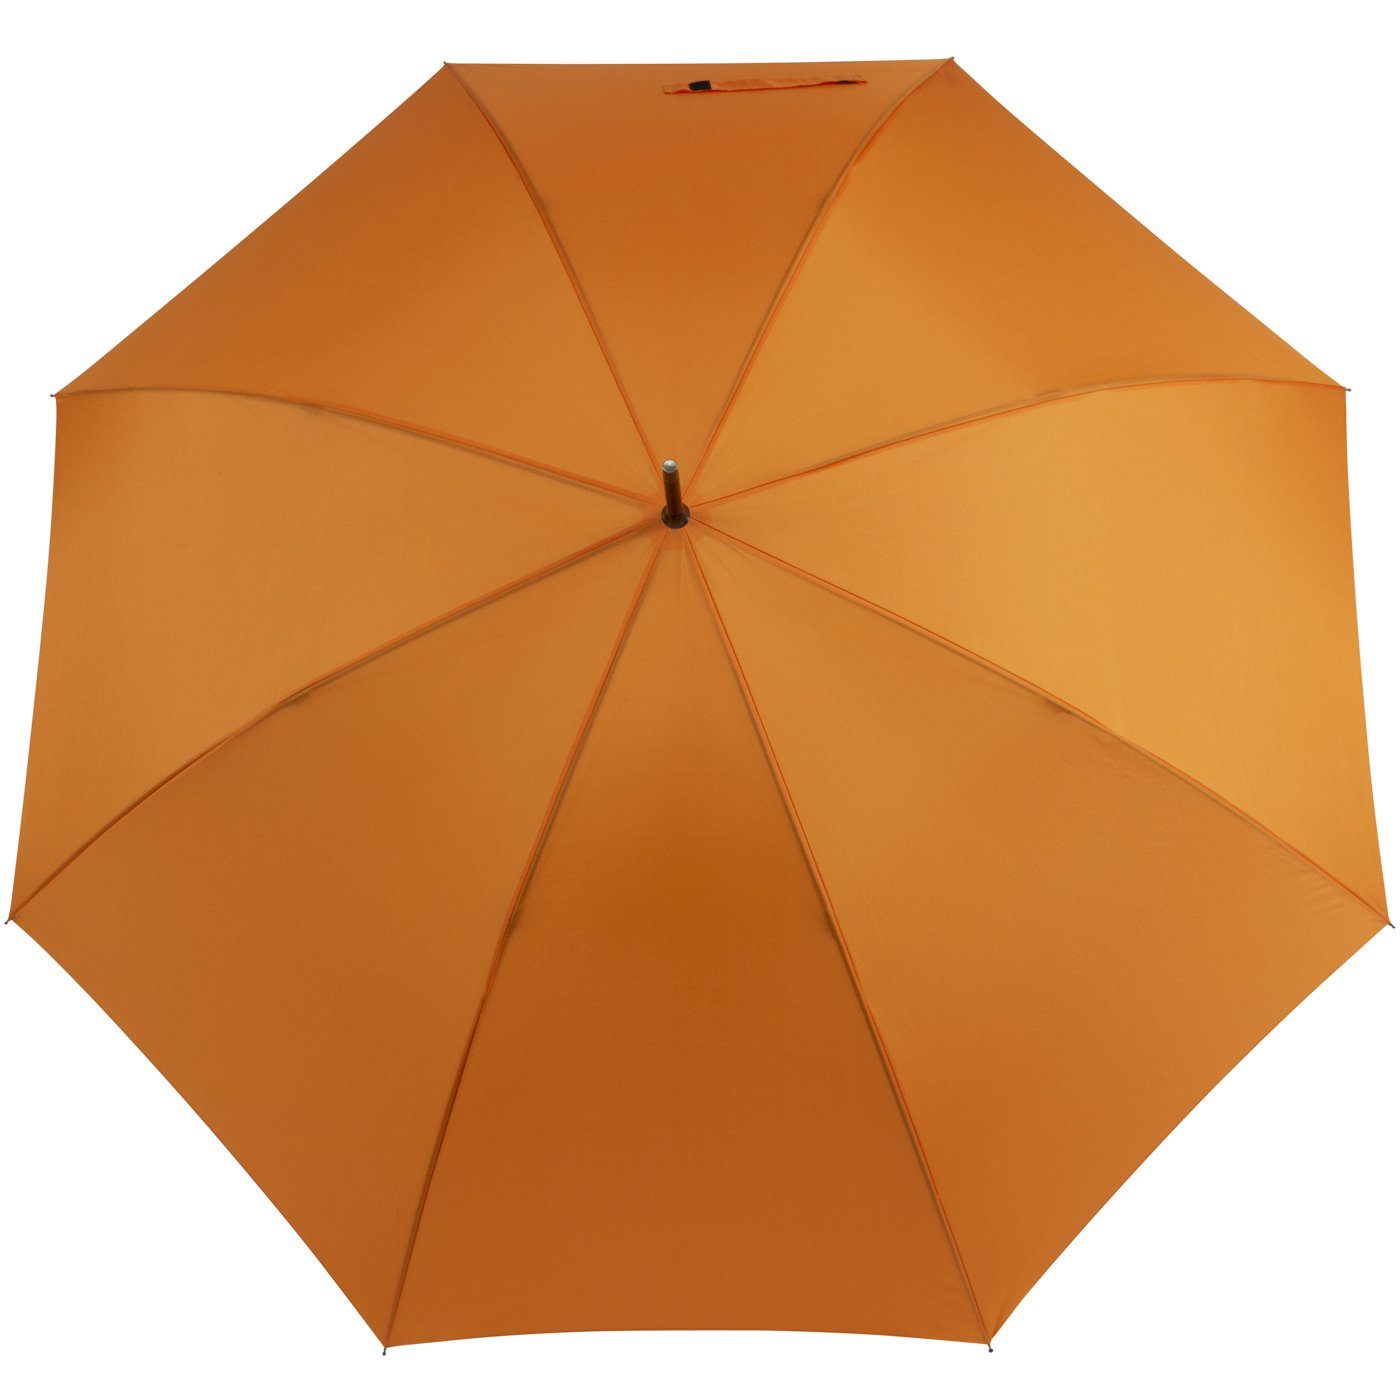 Partnerschirm XXL Golfschirm, Herren, für - doppler® und groß Damen Langregenschirm orange und uni-Sommerfarben stabil,